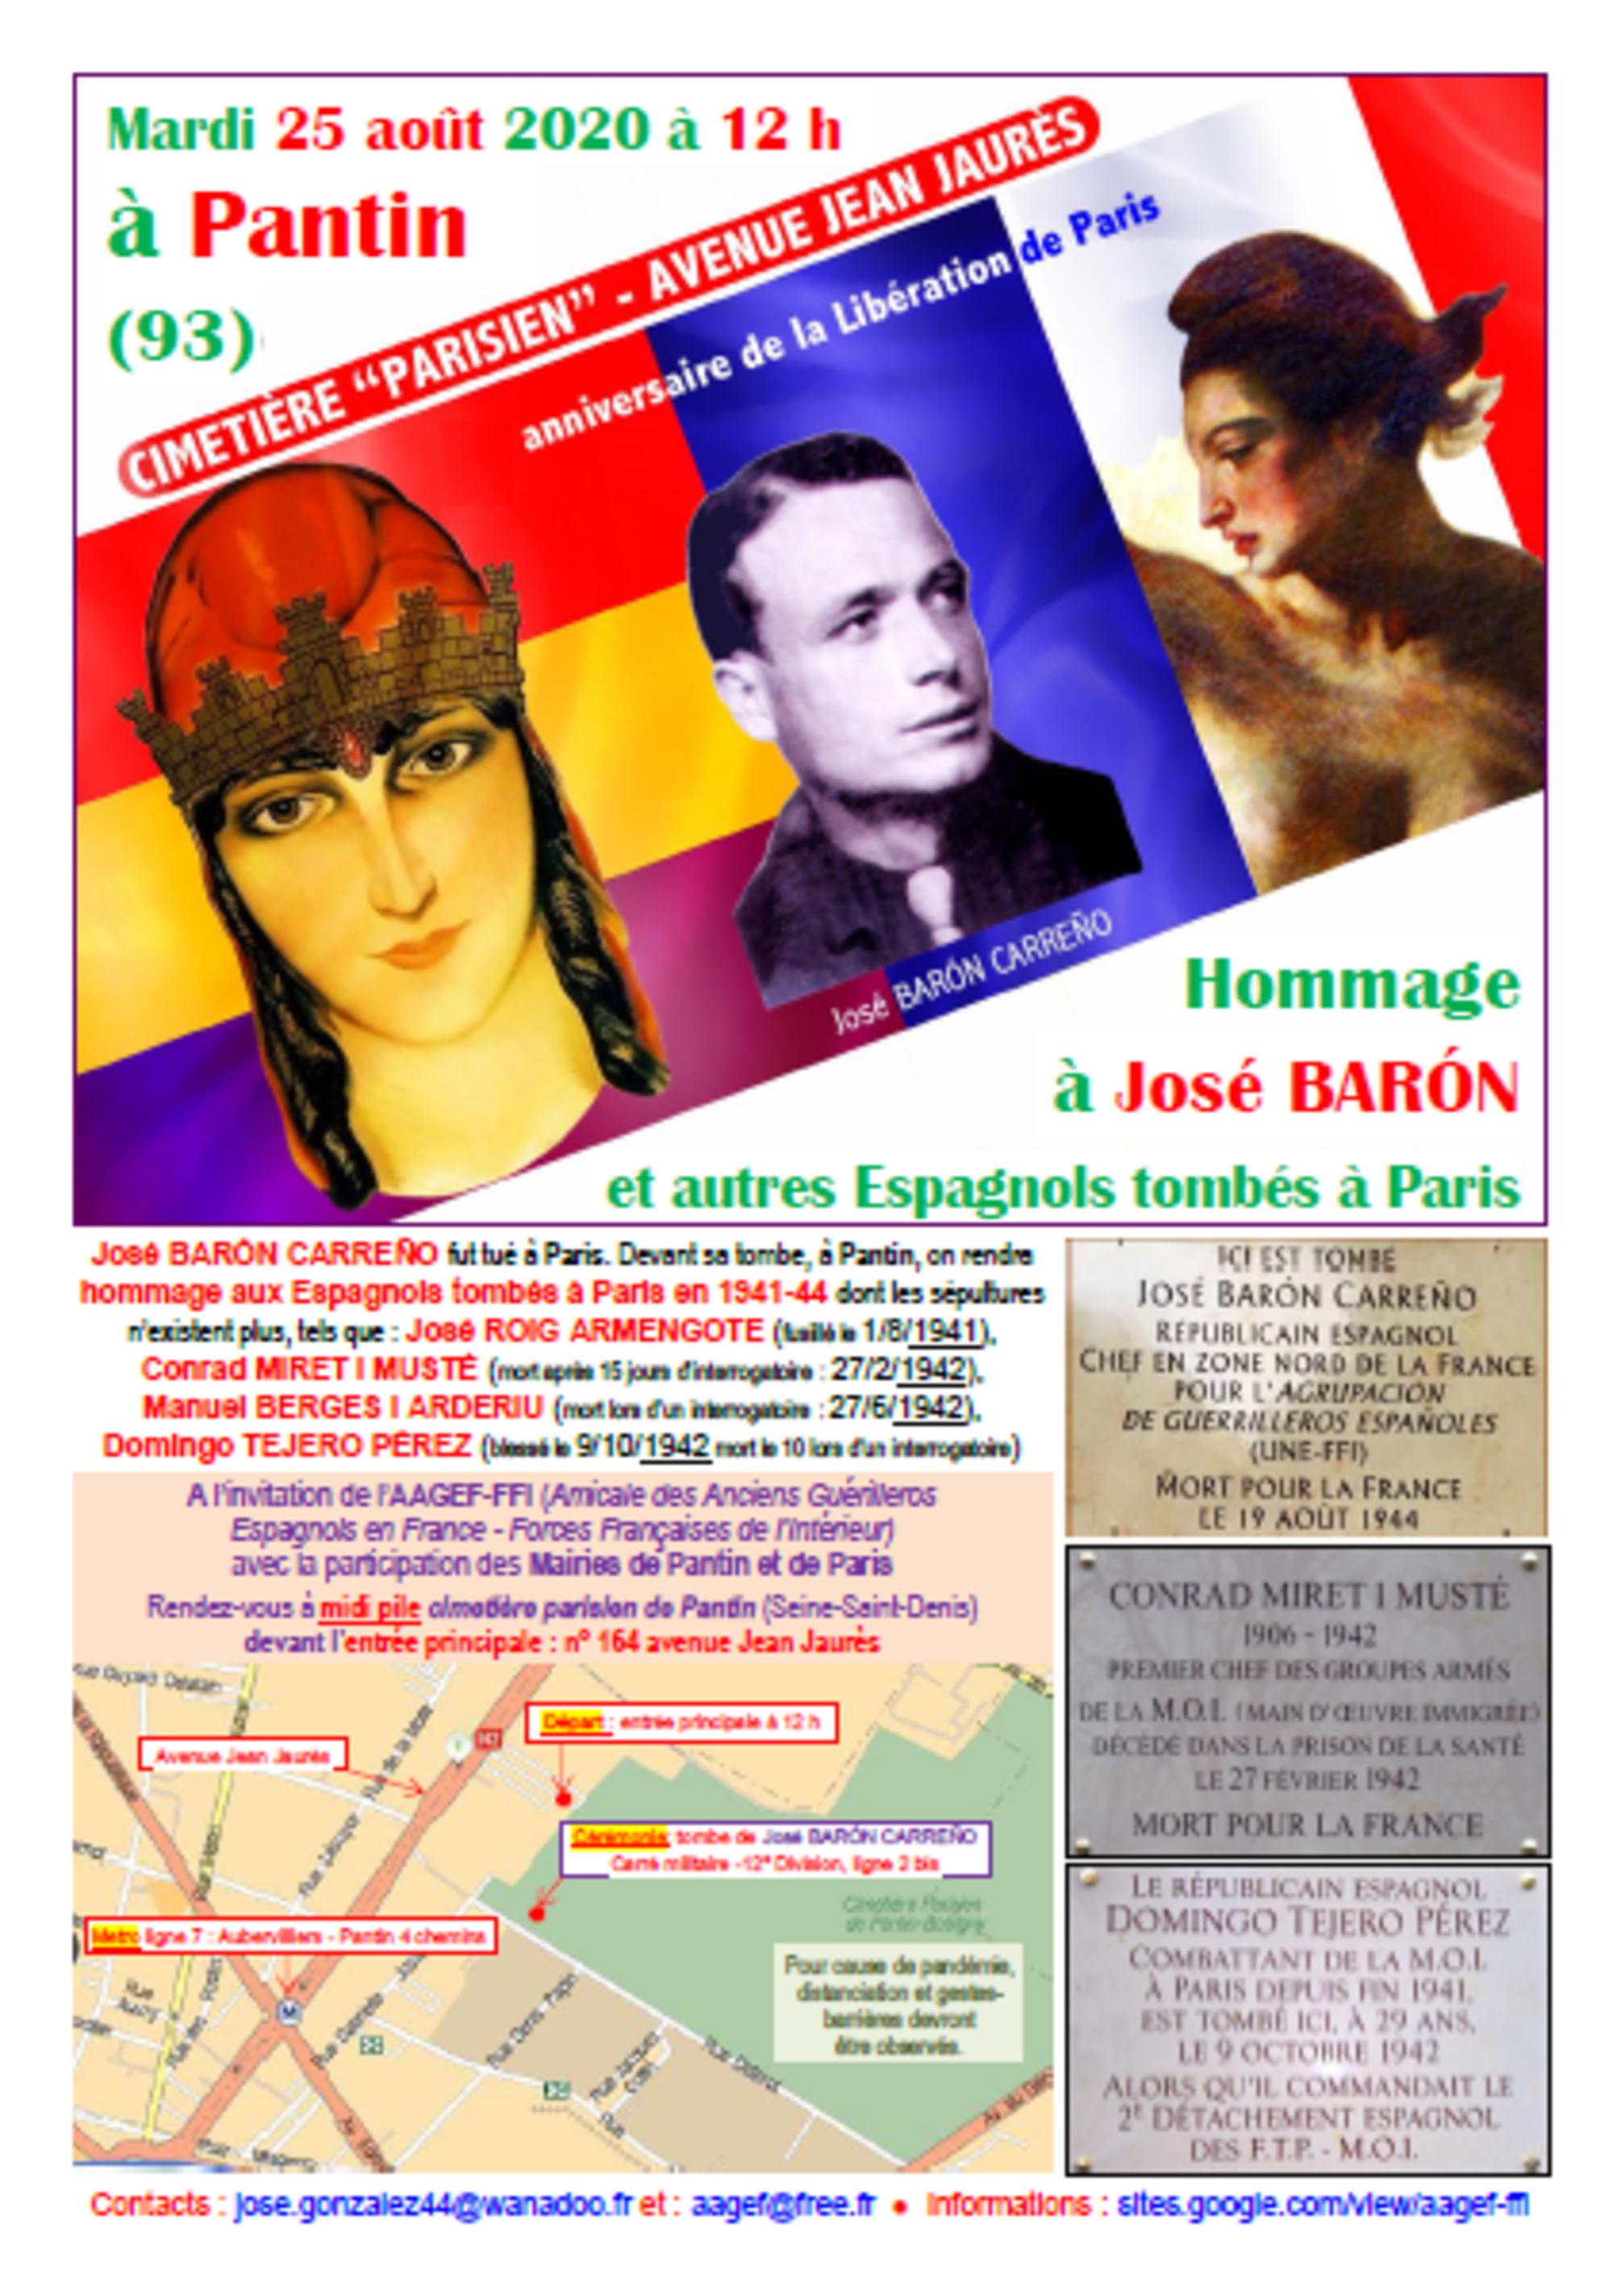 Homenaje a Jose Baron y a los españoles muertos en Paris